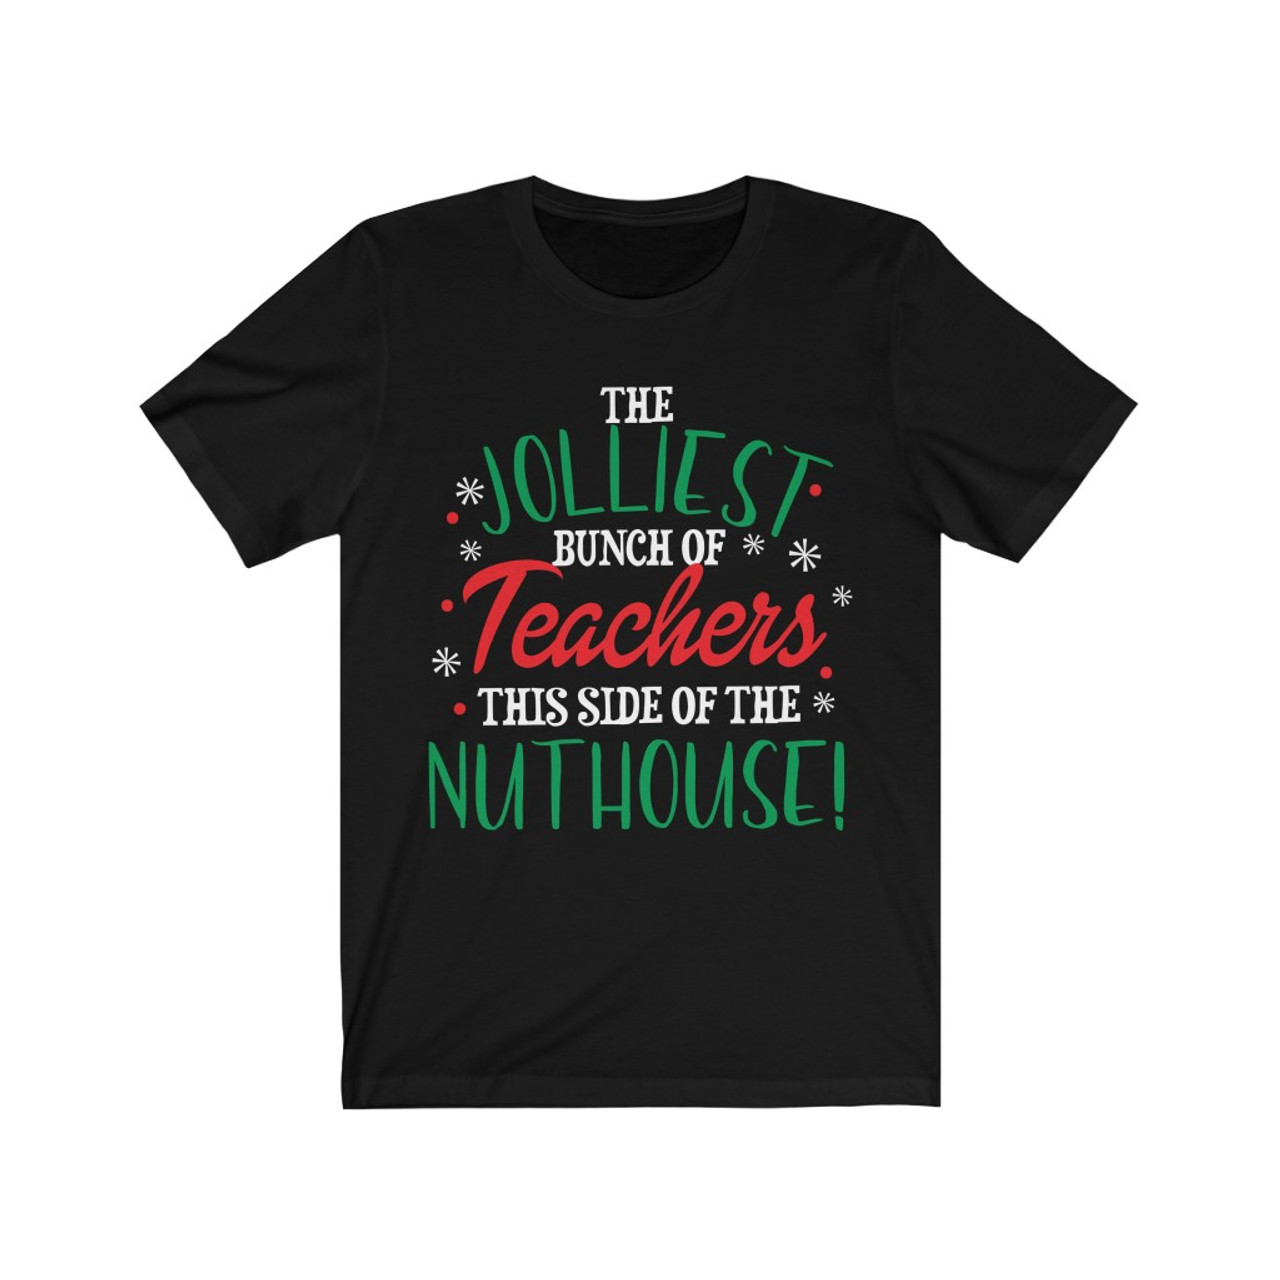 "The Jolliest Bunch of Teachers" Crew Neck T-shirt